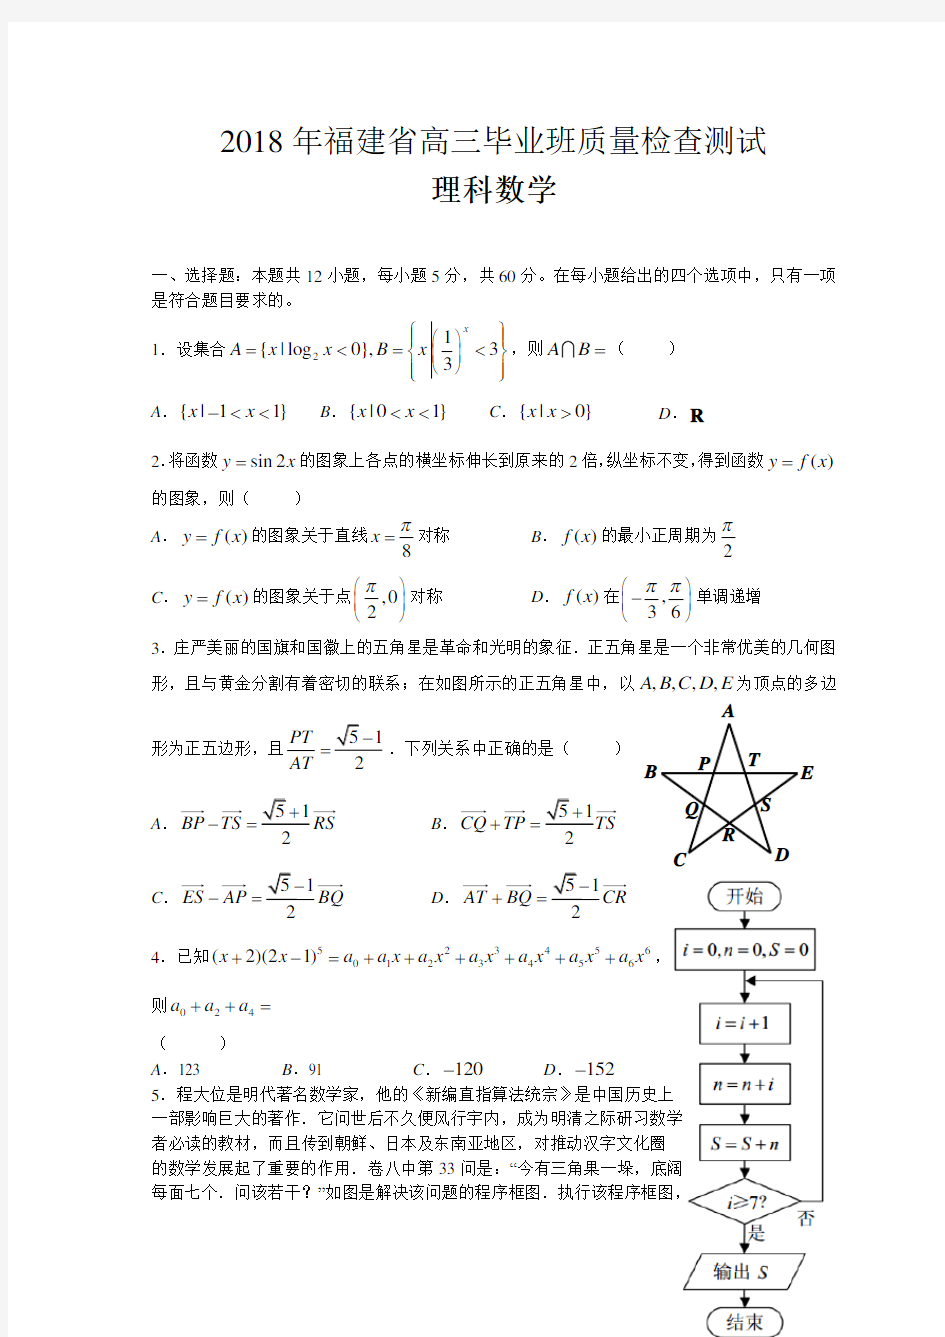 2018年福建省高三毕业班质量检查测试理科数学试卷(试卷打印版)